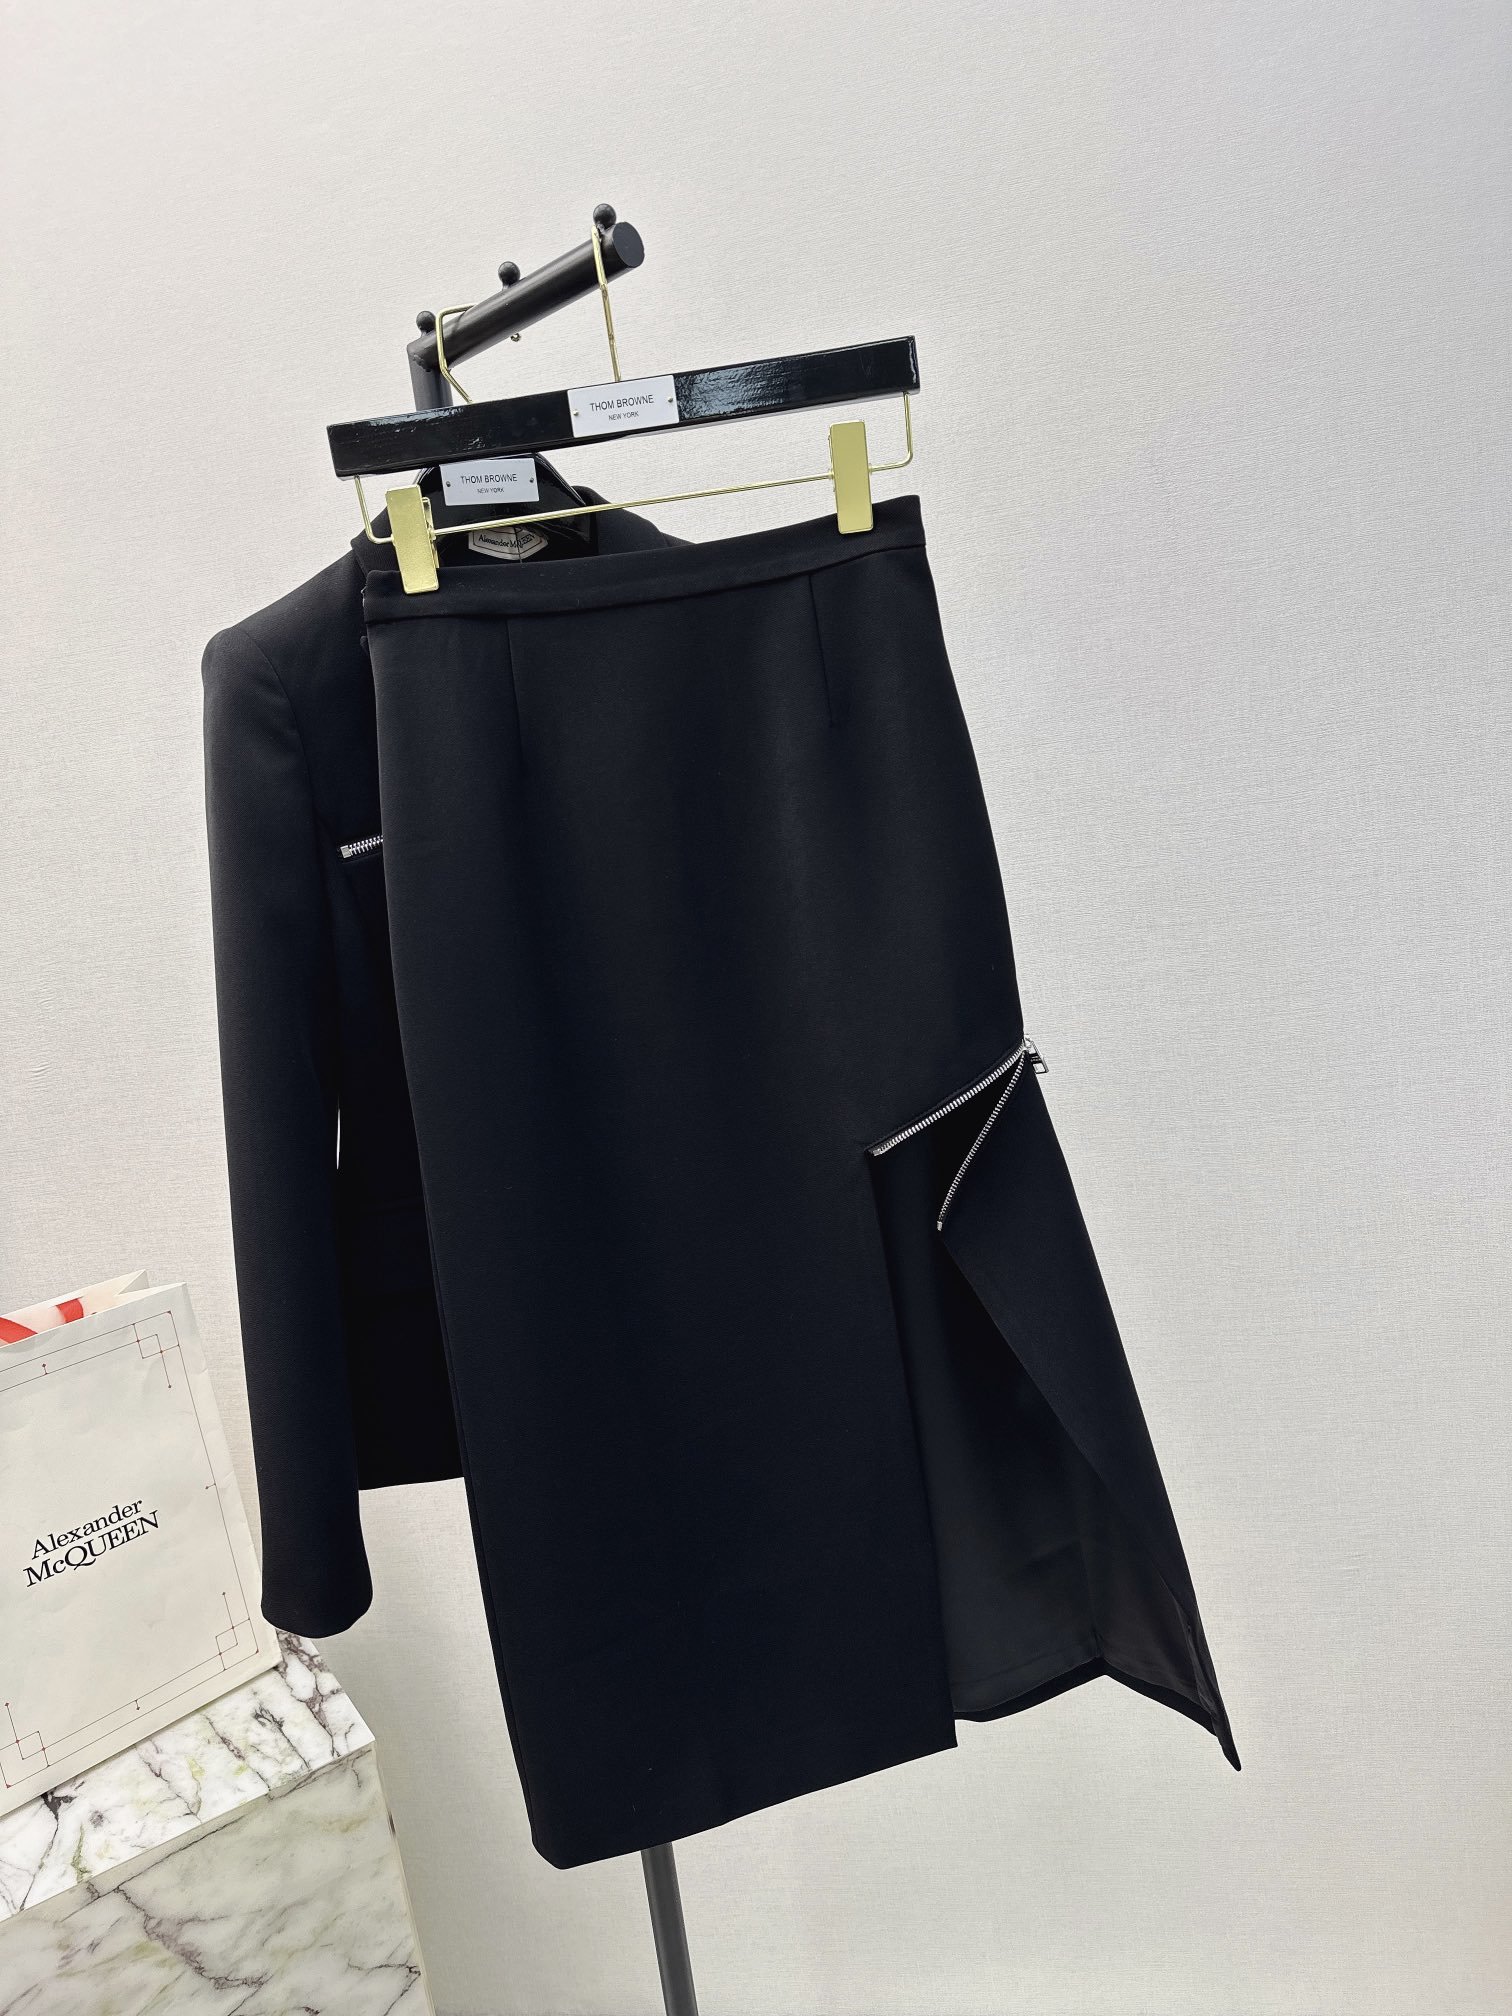 独家首发MCQ23Ss秋冬最新款高级黑拉链开叉包臀半身裙极简主义裙中拉链开合随意切换不规则裙摆设计上身美